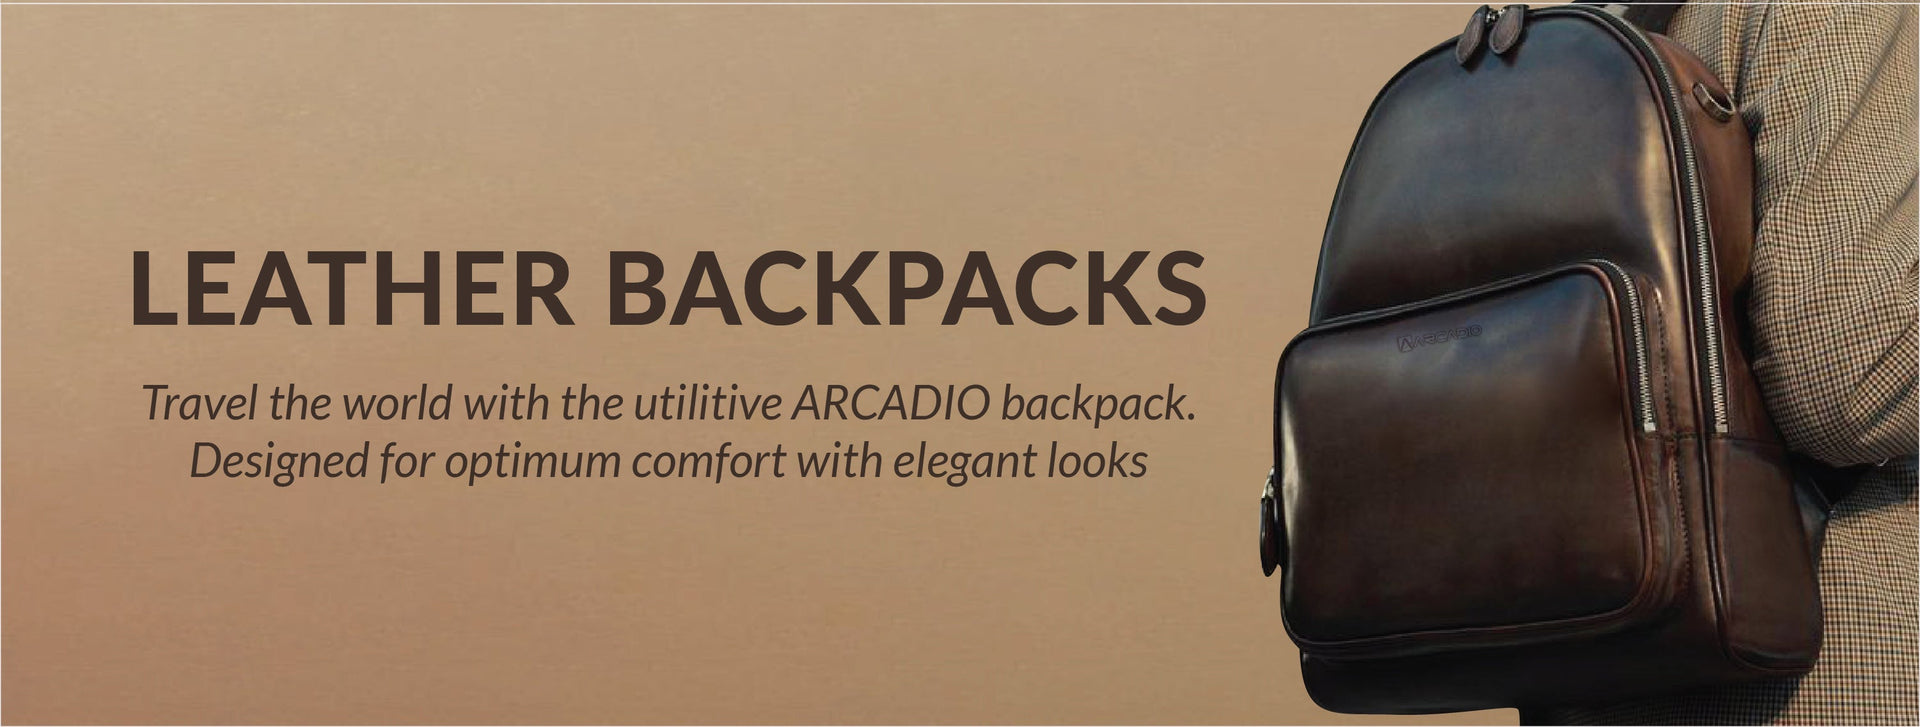 LEATHER Backpack ARCADIO